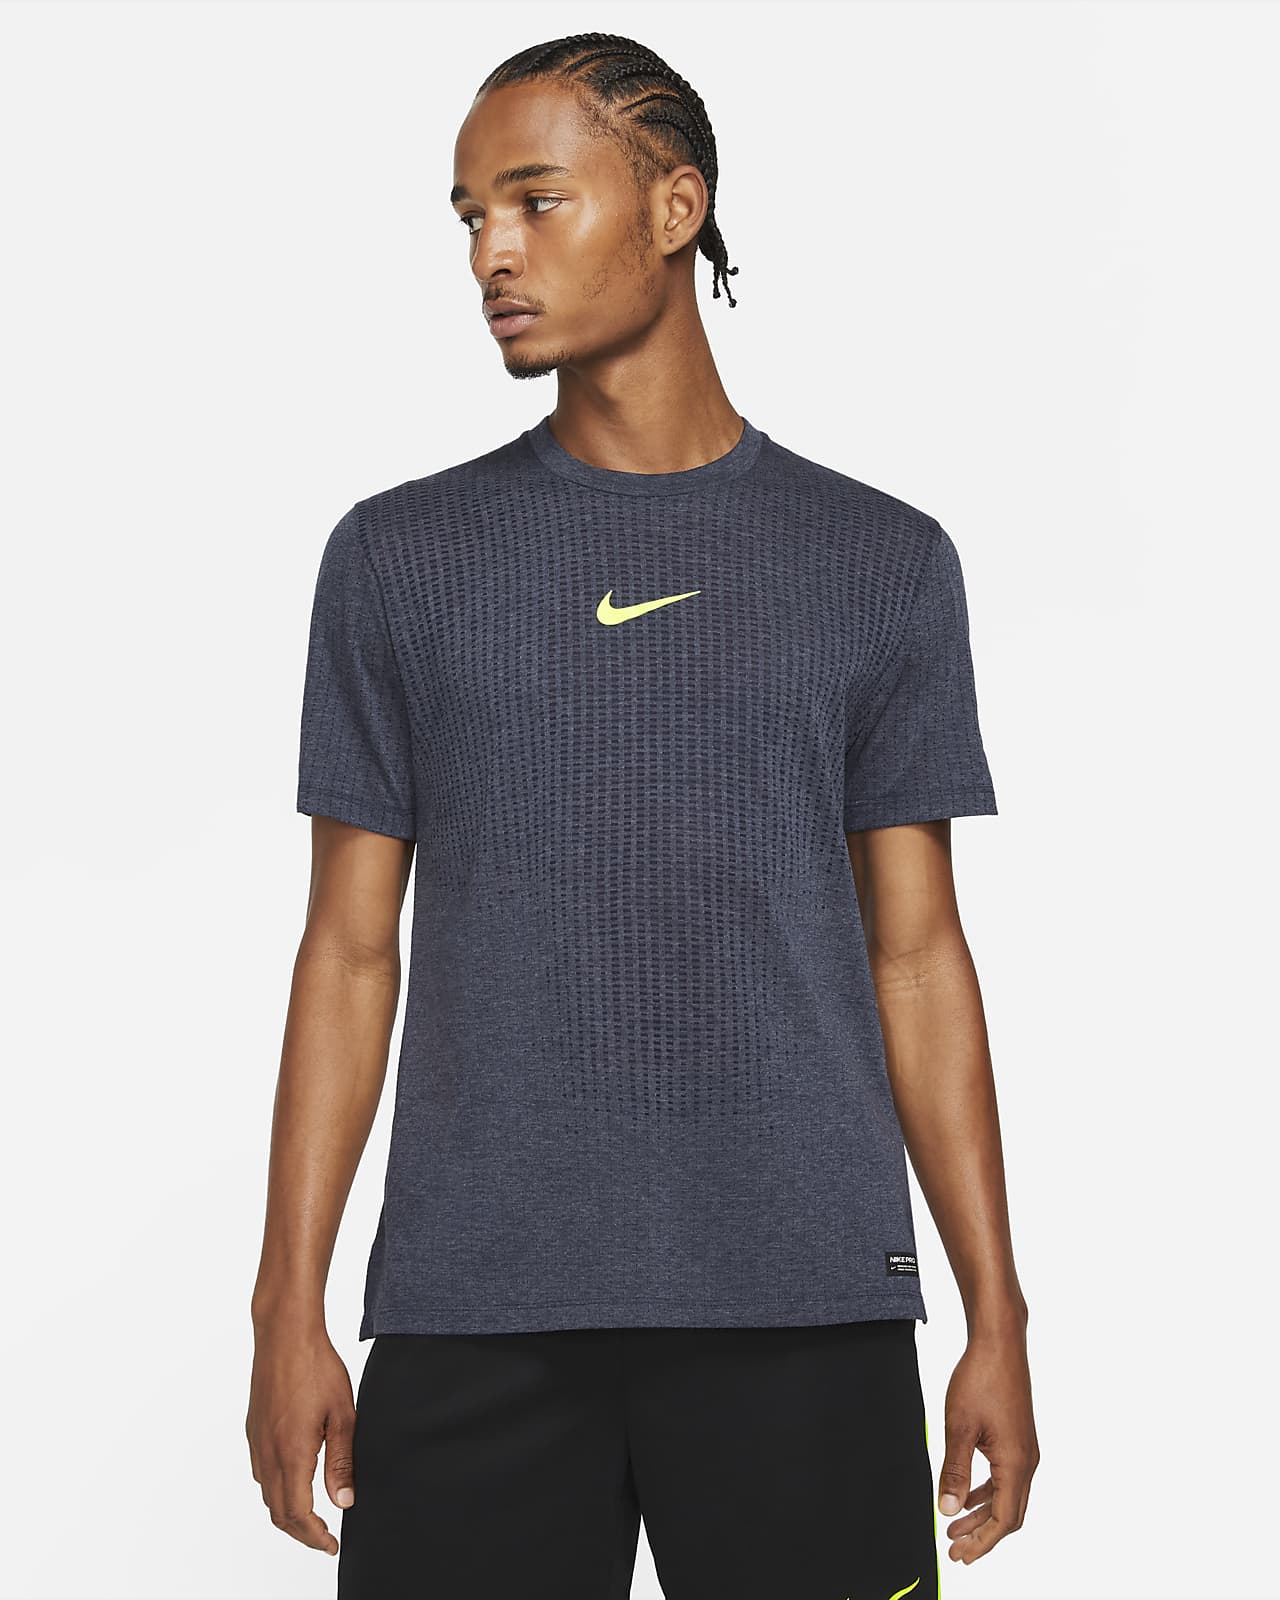 Nike Pro Dri-FIT ADV Men's Short-Sleeve Top